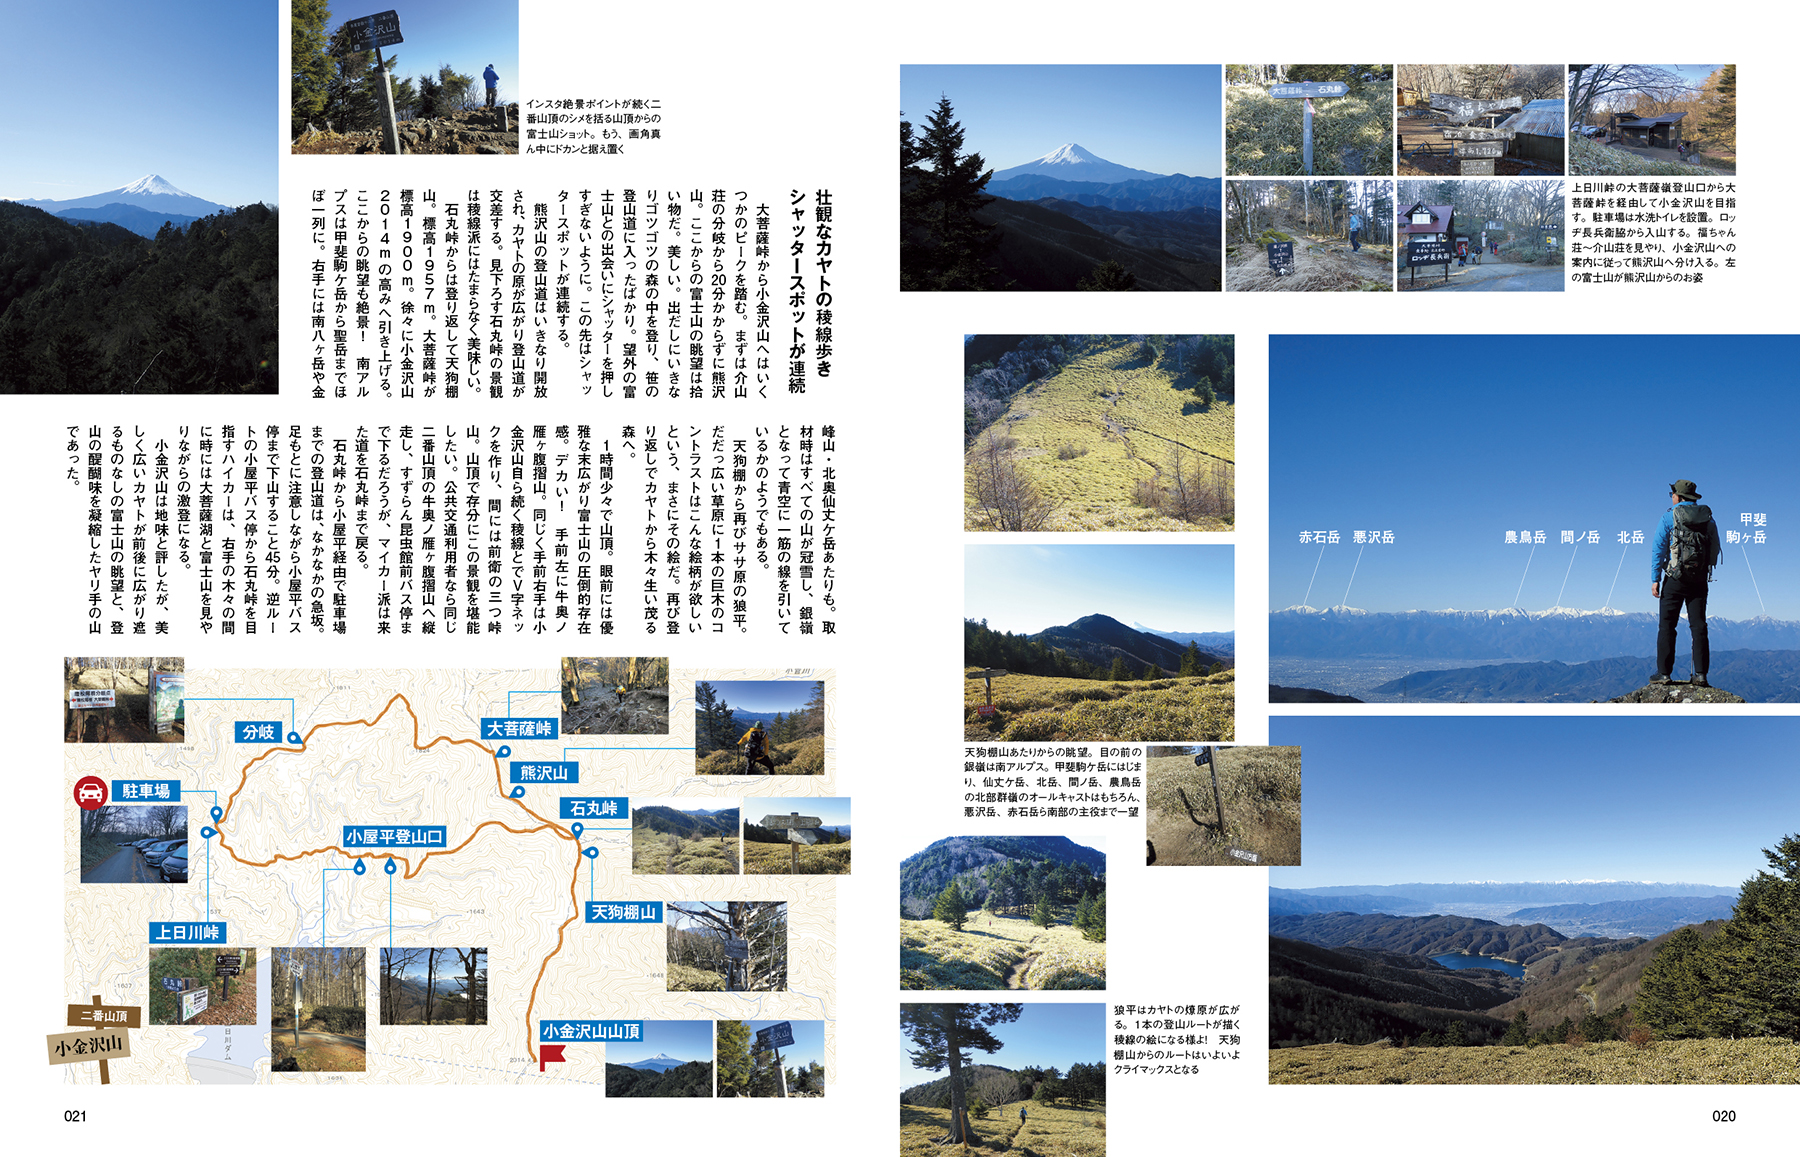 交通タイムス社発行「絶景富士山に会える日帰り低山20」の登山レポート記事